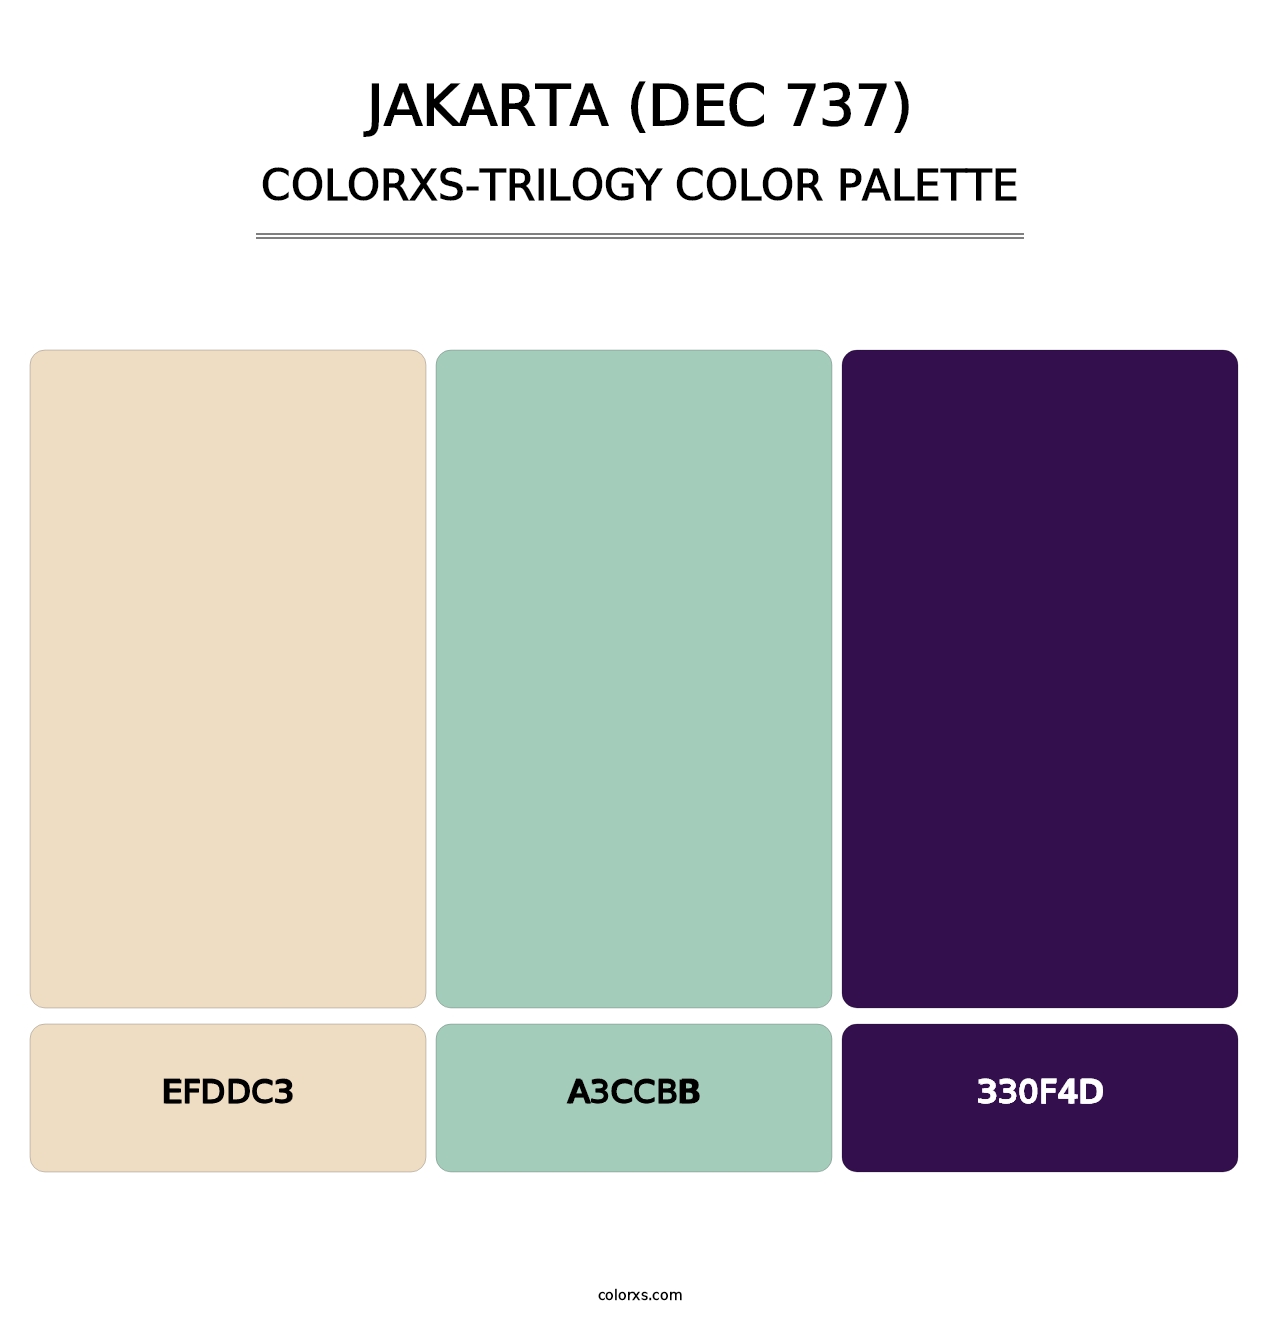 Jakarta (DEC 737) - Colorxs Trilogy Palette